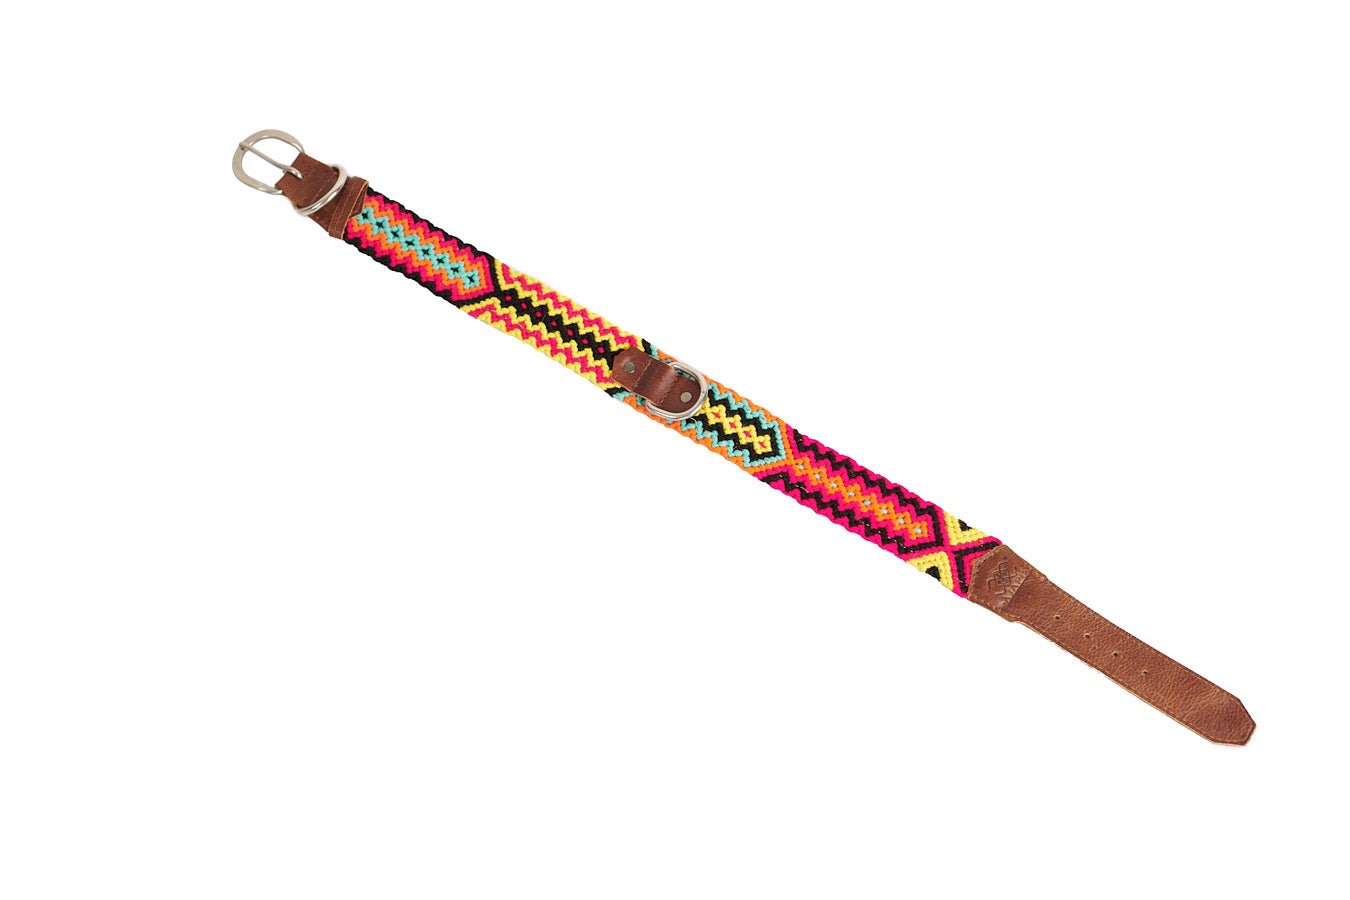 Collares Wayuu para perros Tallas XL